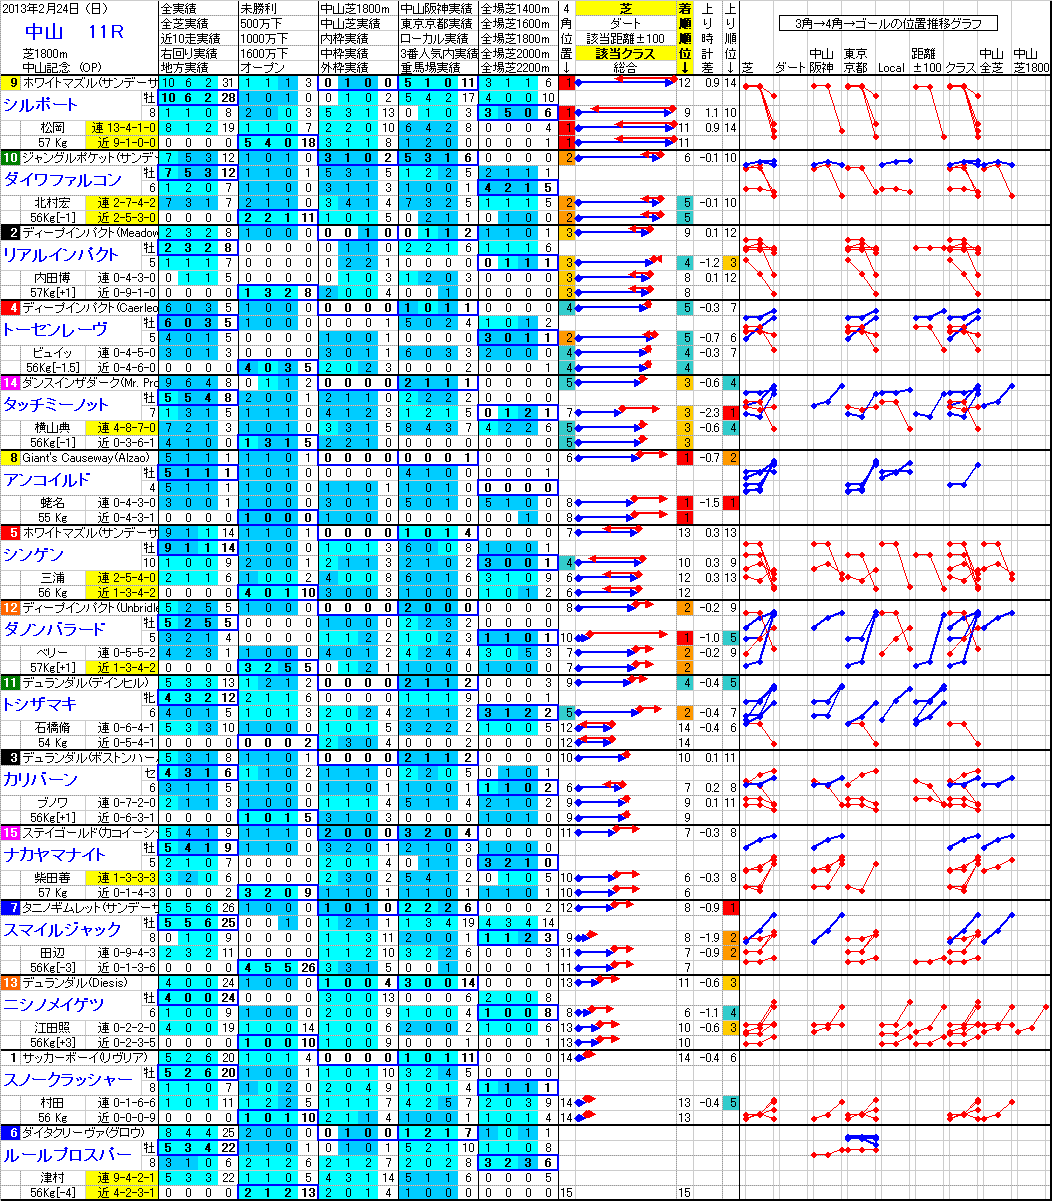 中山 2013年2月24日 （日） ： 11R － 分析データ